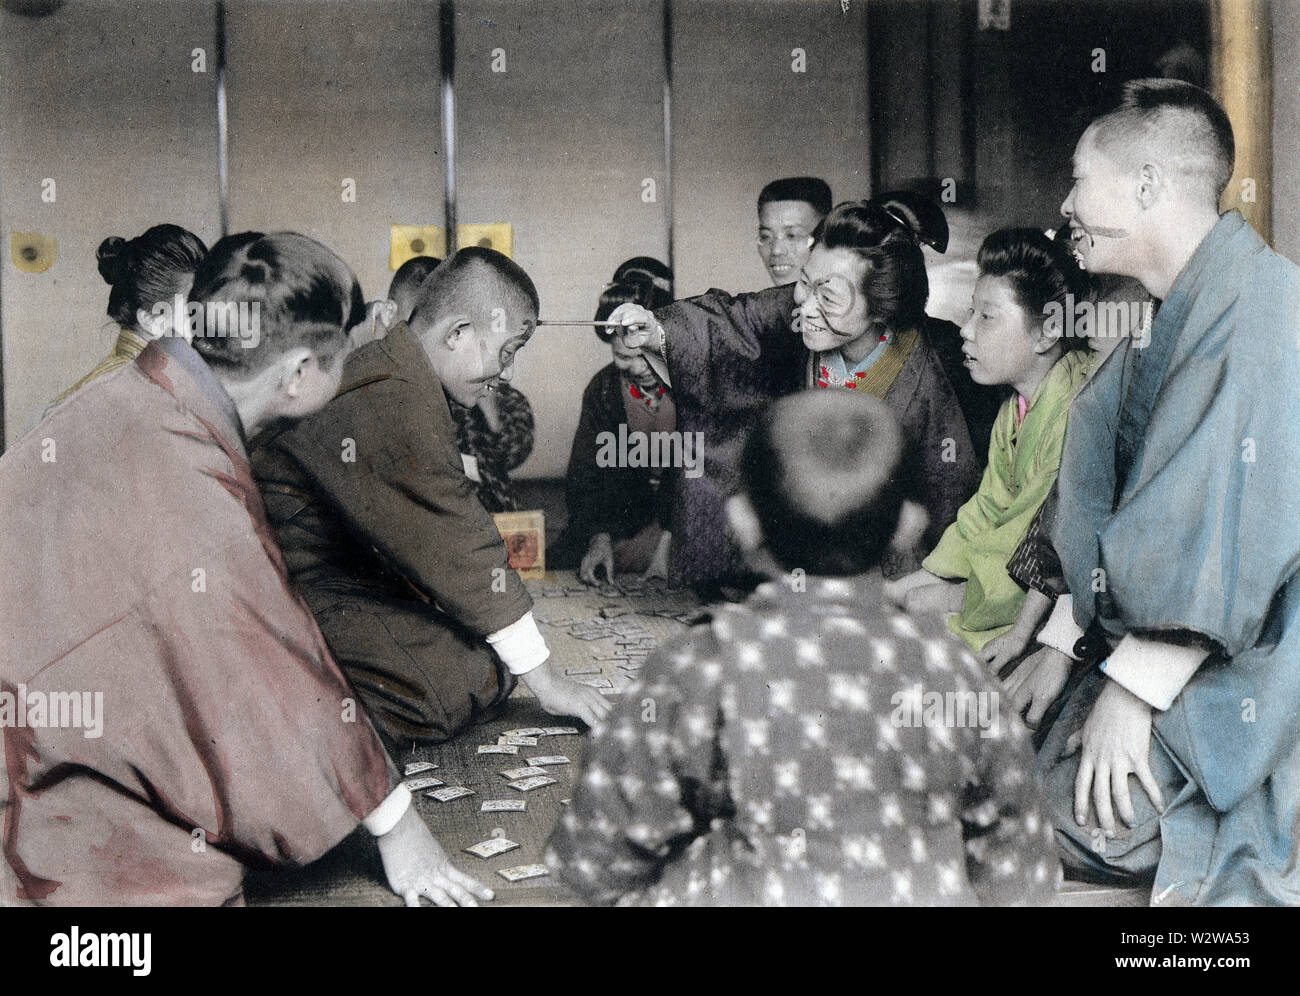 [1900s Japan - Japanische Neues Jahr - spielend Karuta] - Verlierer im Spiel der karuta (siehe Neues Jahr feiern 18) Tinte auf ihr Gesicht gemalt. Dieses Bild ist Teil des neuen Jahres in Japan, ein Buch von Kobe veröffentlicht Fotograf Kozaburo Tamamura 1906 (Meiji 39). 20. Jahrhundert vintage Lichtdruck drucken. Stockfoto